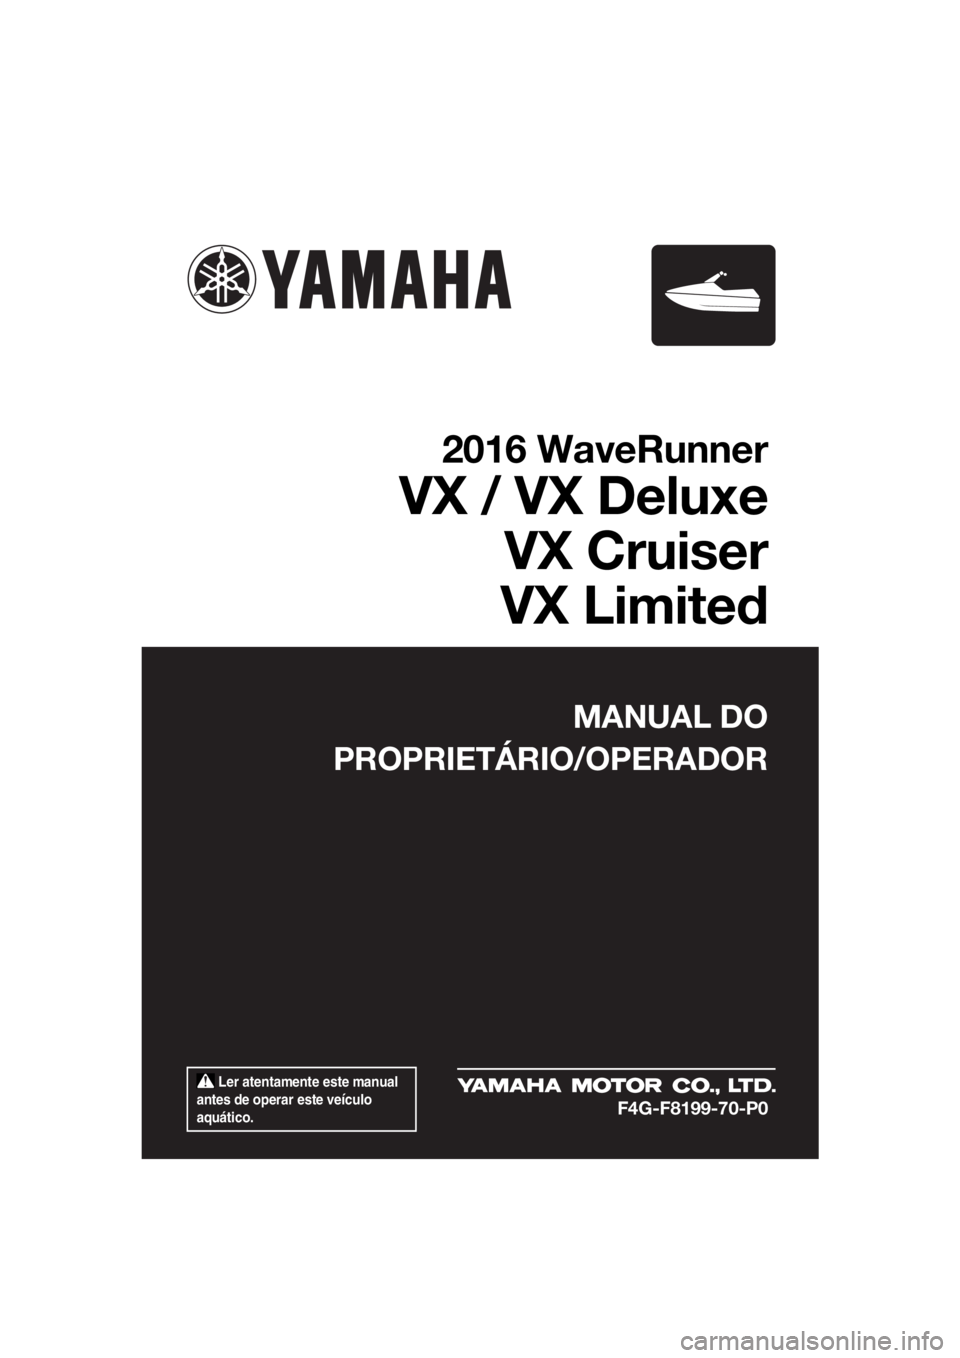 YAMAHA VX CRUISER 2016  Manual de utilização (in Portuguese)  Ler atentamente este manual 
antes de operar este veículo 
aquático.
MANUAL DO
PROPRIETÁRIO/OPERADOR
2016 WaveRunner
VX / VX Deluxe
VX Cruiser
VX Limited
F4G-F8199-70-P0
UF4G70P0.book  Page 1  Mon